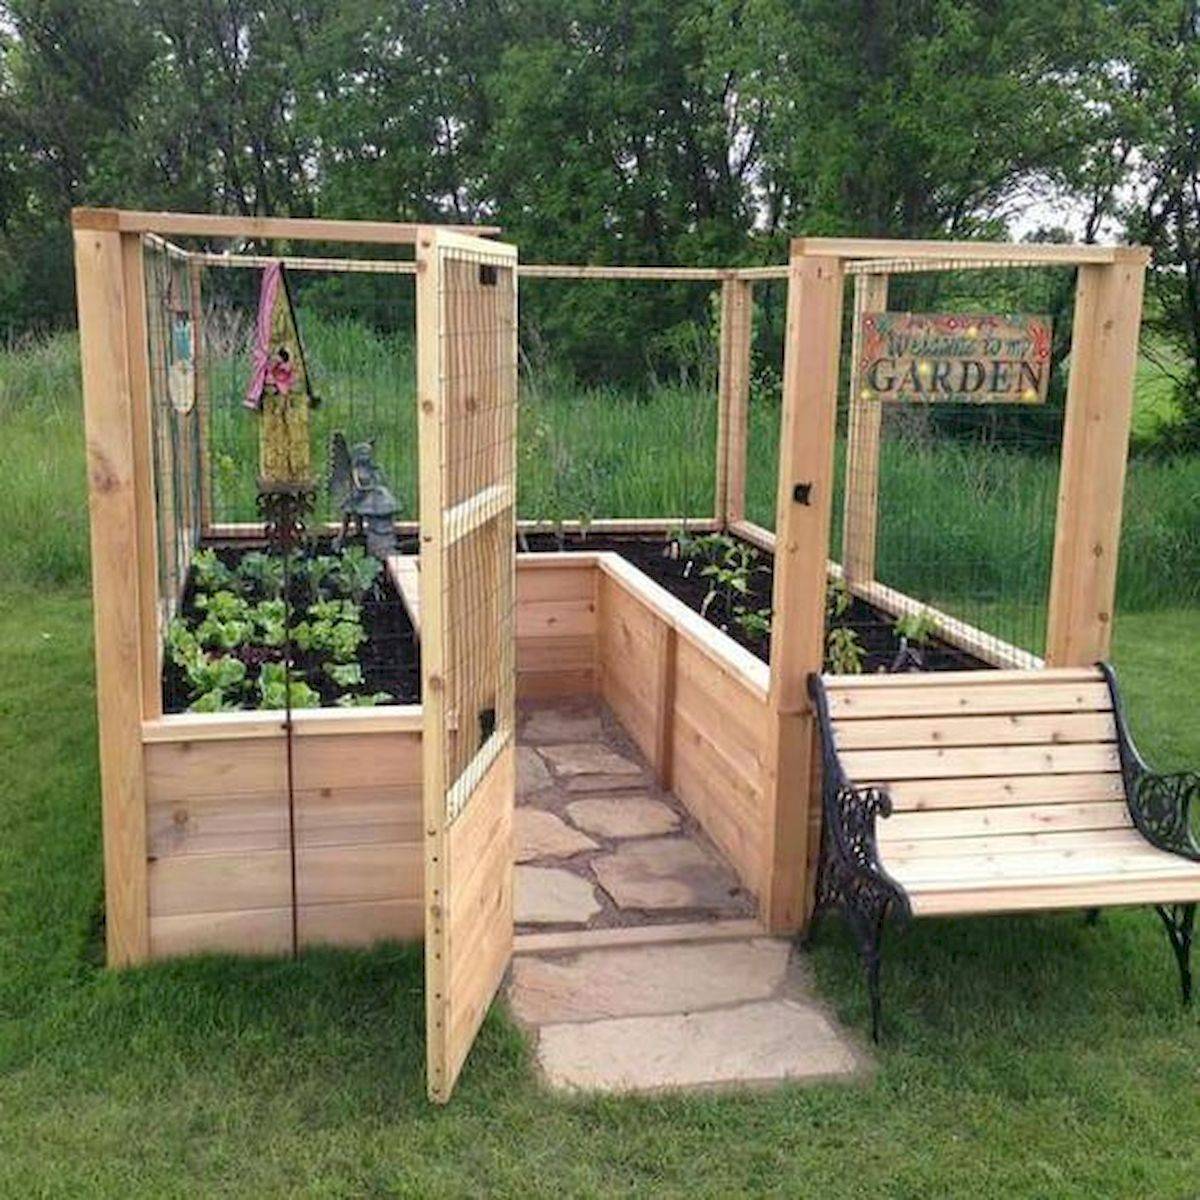 Our Backyard Raised Vegetable Garden